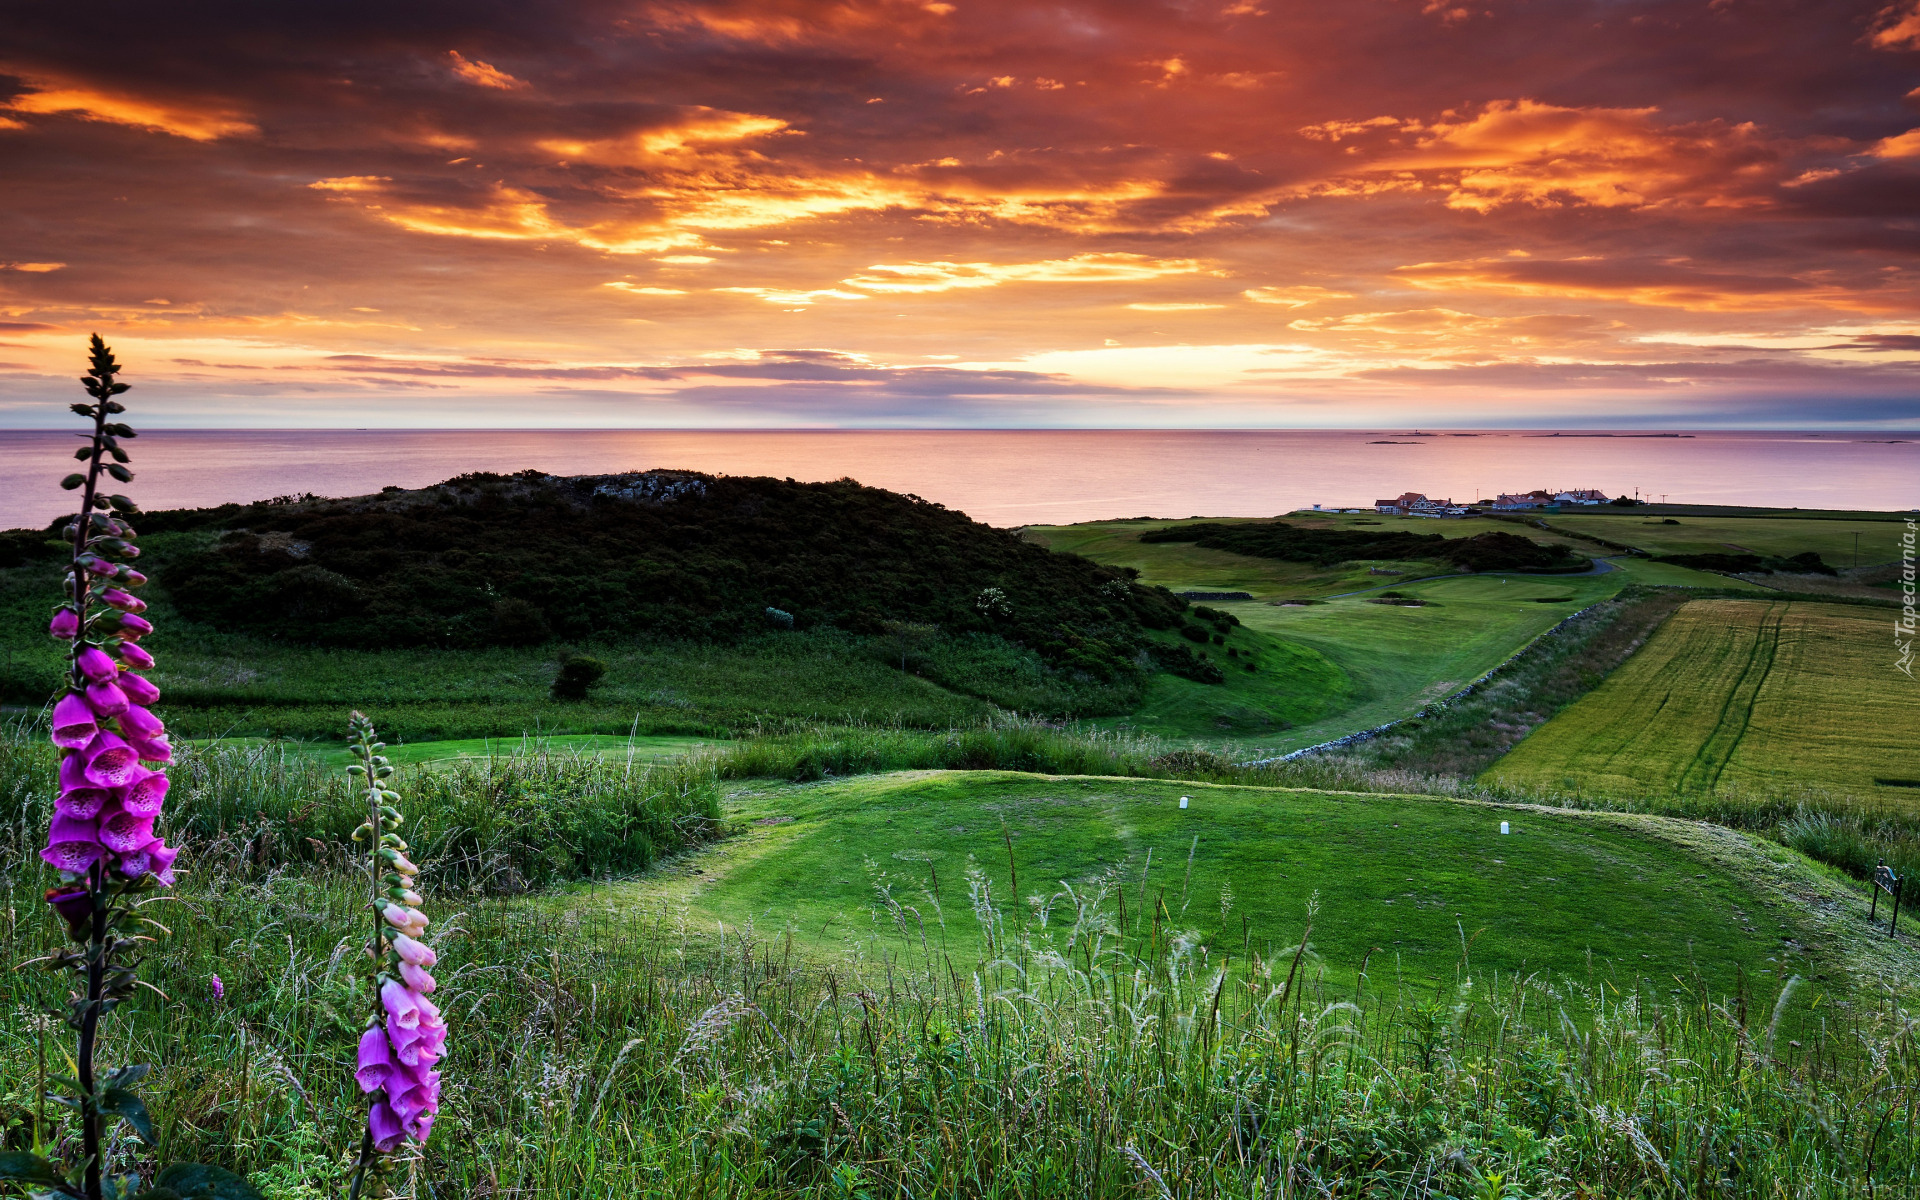 Wzgórze, Pole golfowe, Łąki, Trawa, Kwiaty, Naparstnica purpurowa, Chmury, Bamburgh, Northumberland, Anglia